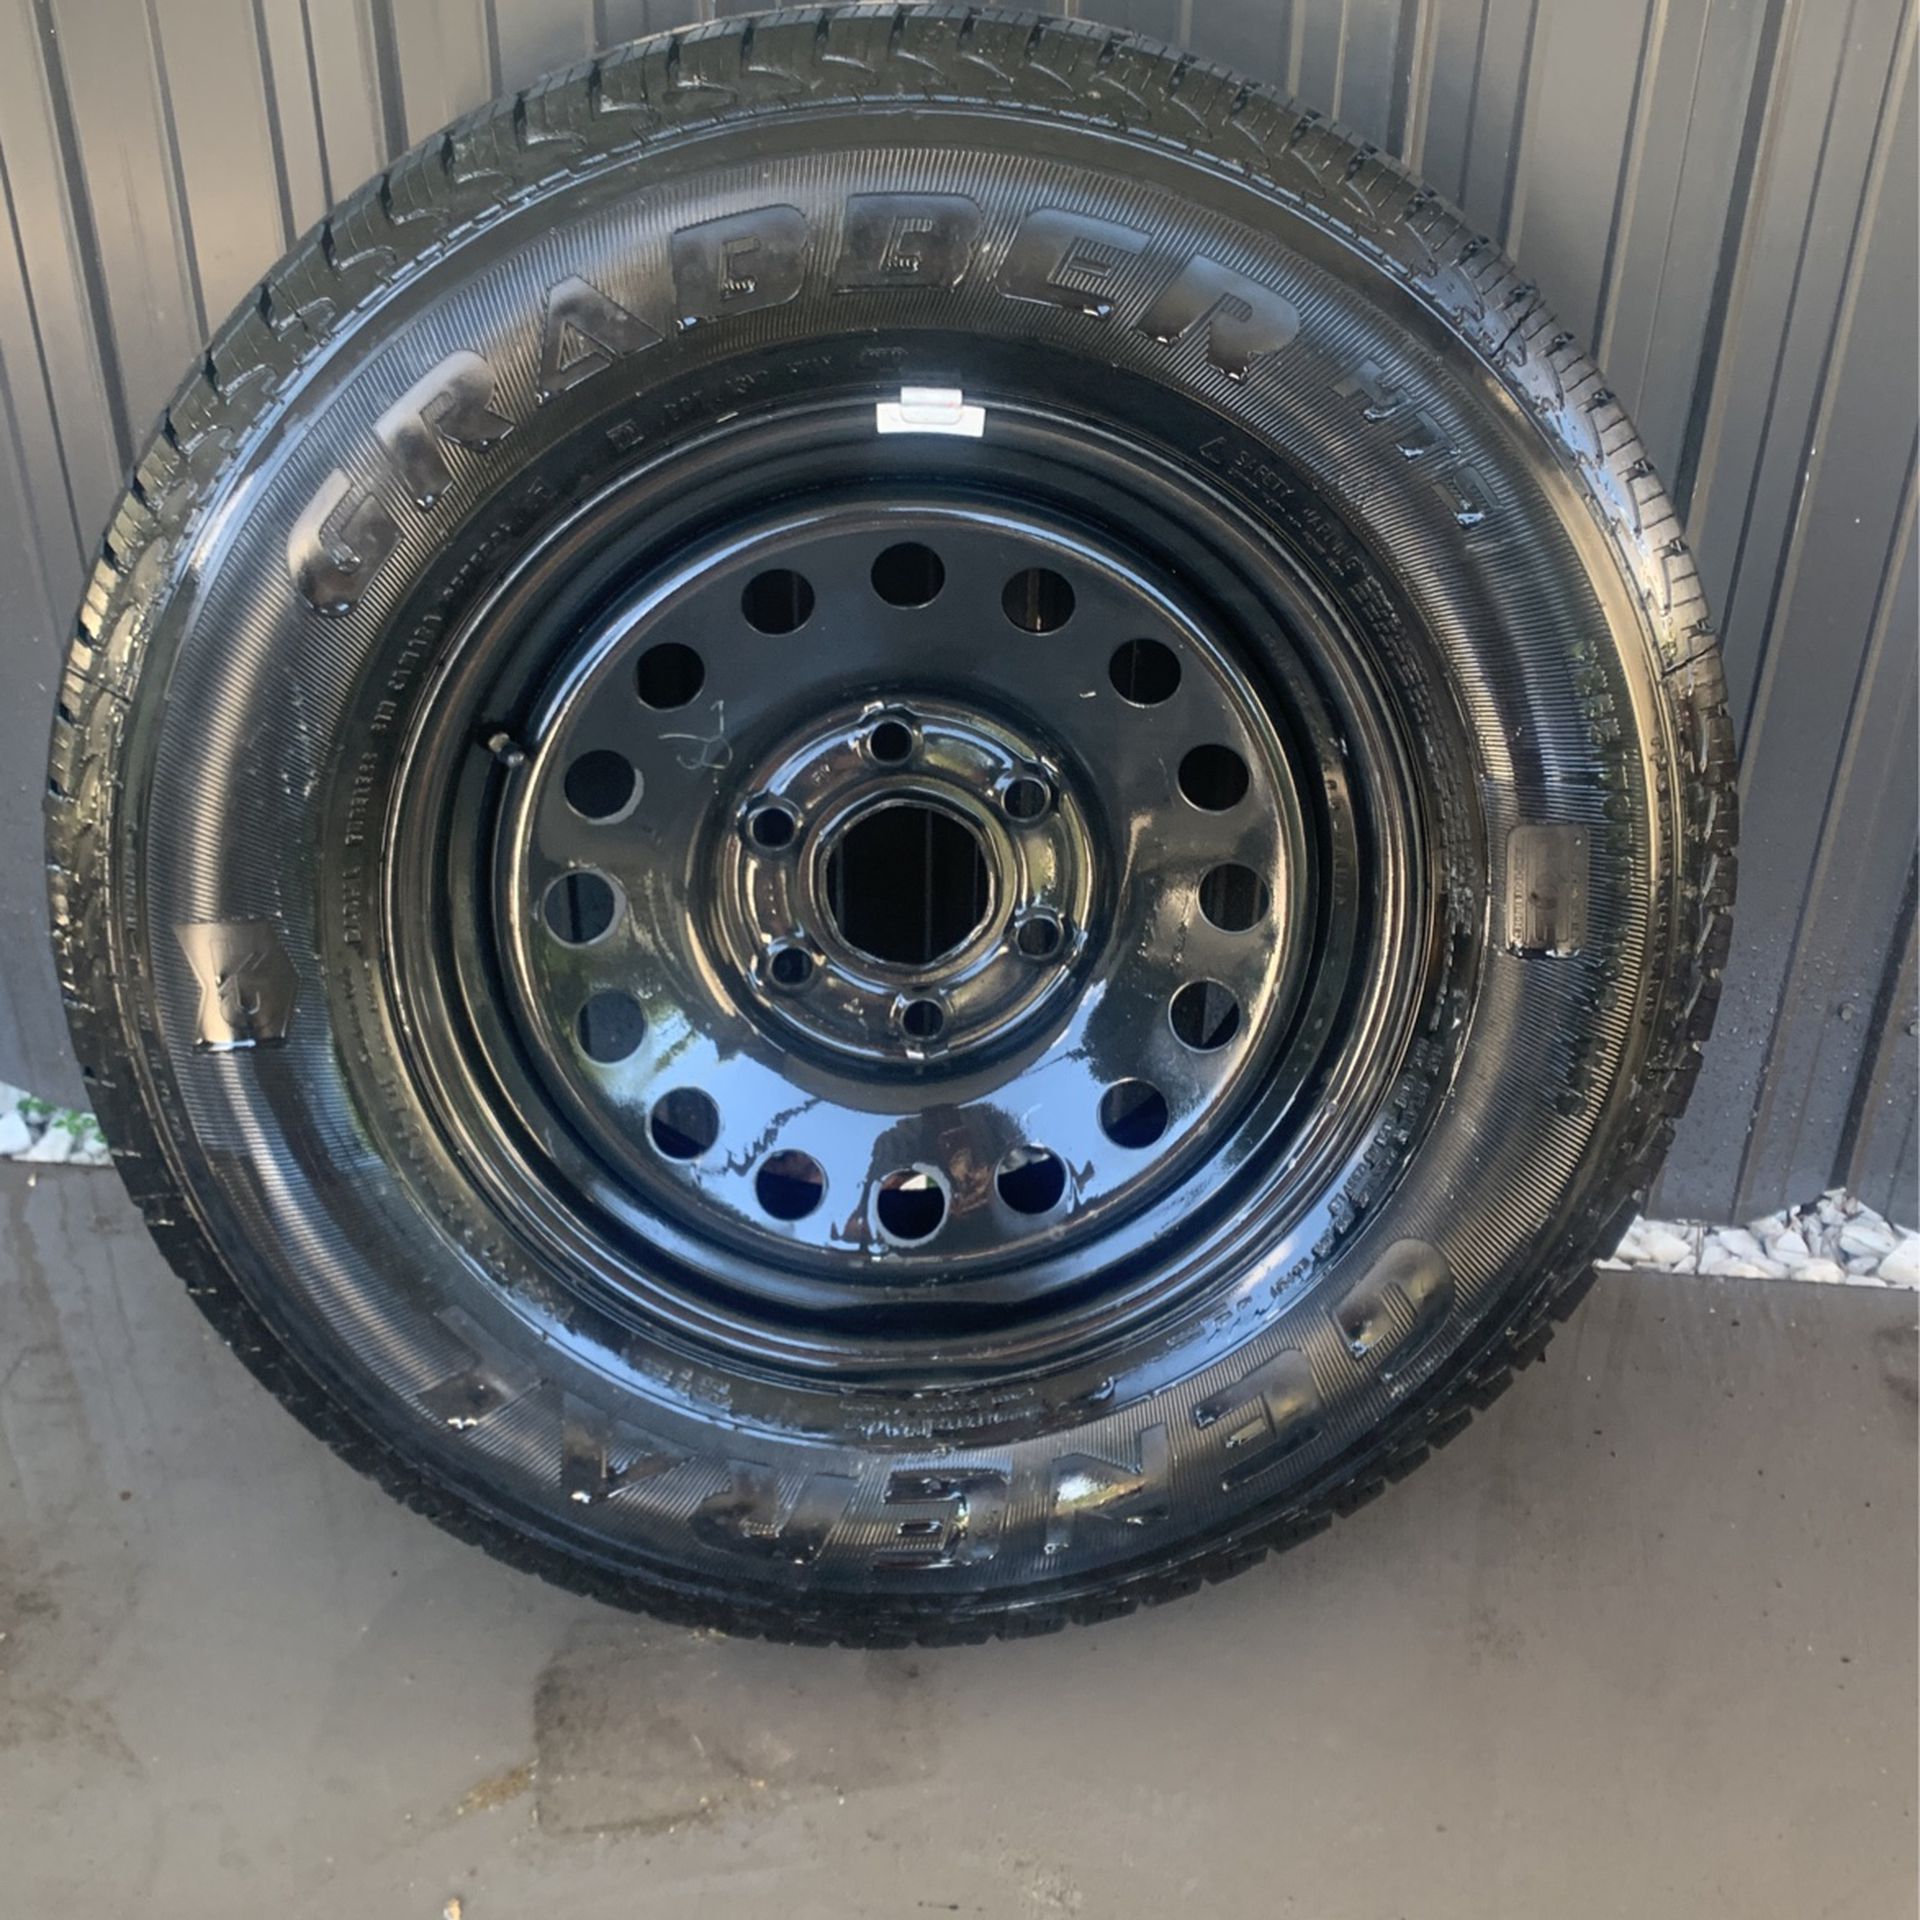 Brand New Spare Tire From Chevy Silverado 1500